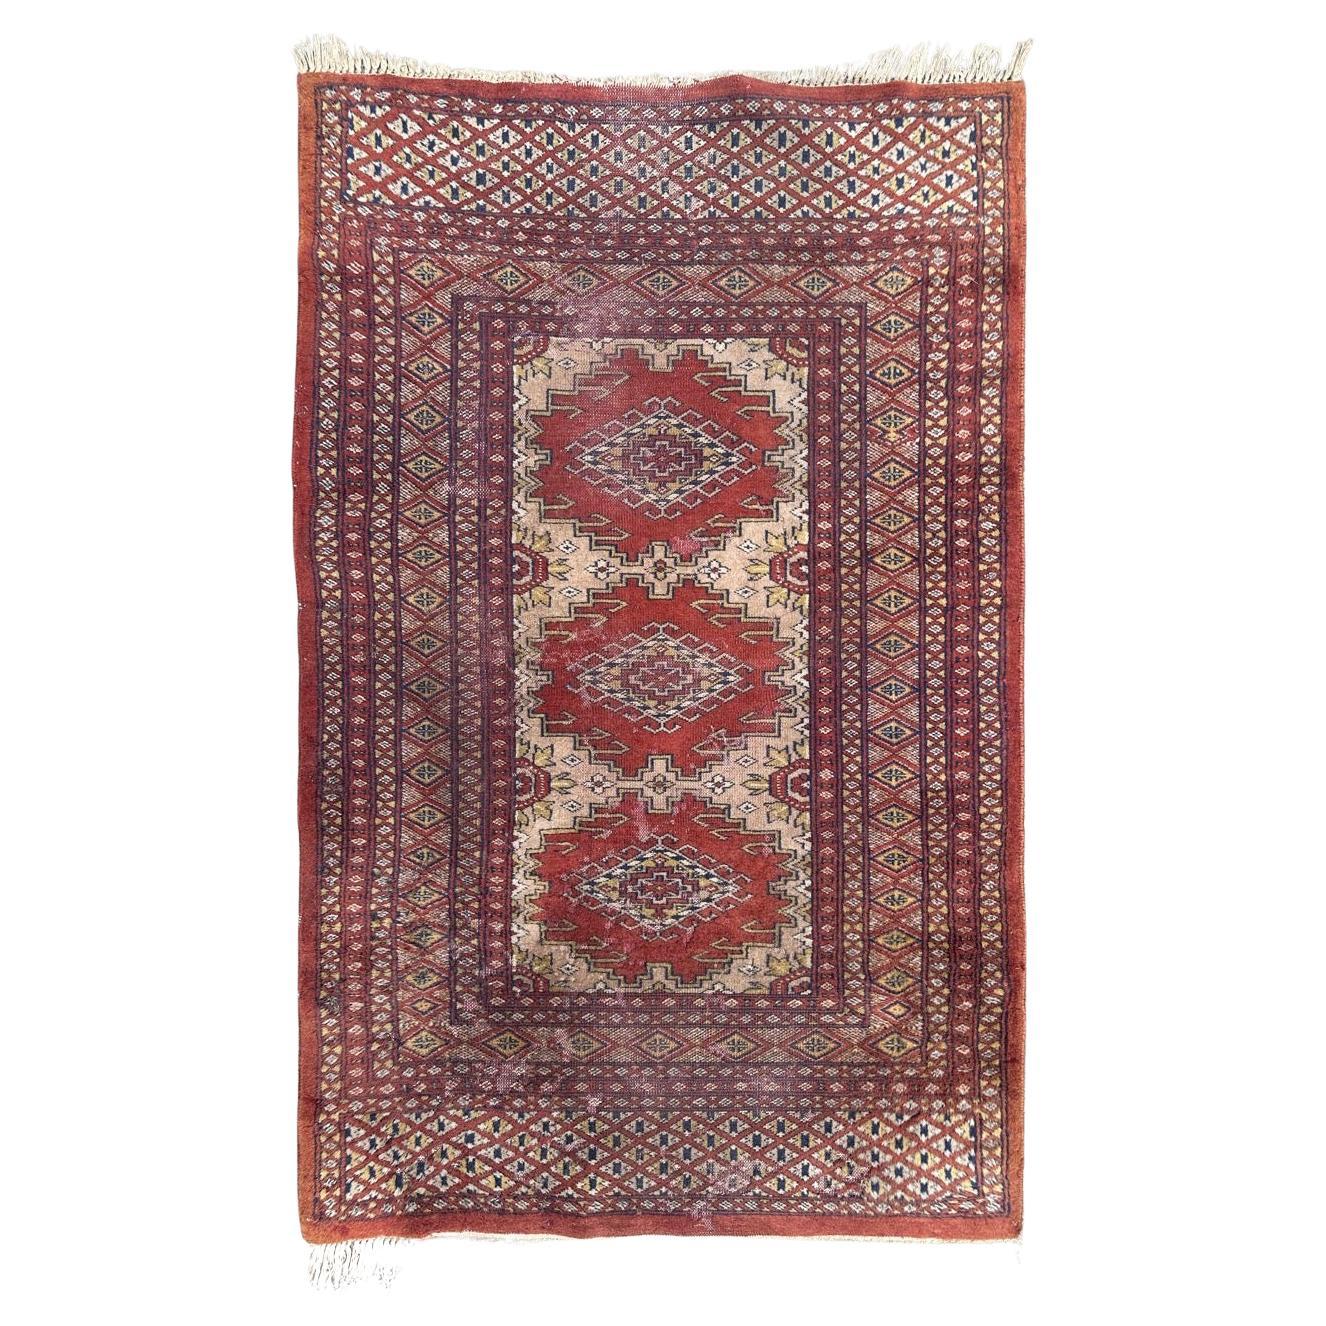 Bobyrug’s distressed vintage Pakistani rug Turkmen style 